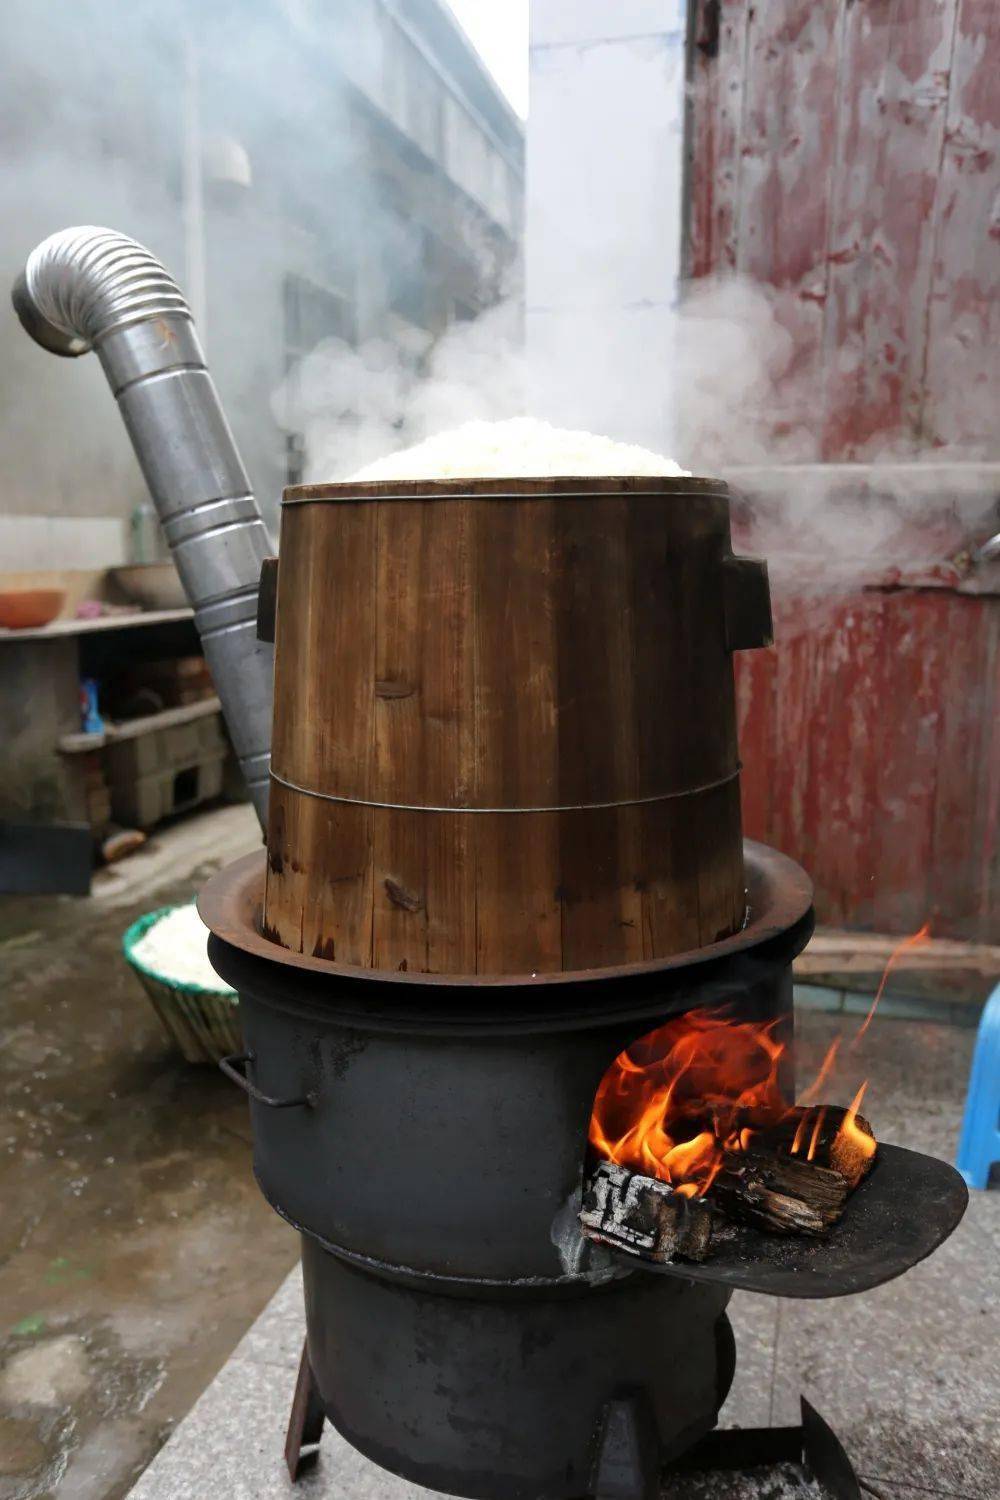 糯米慢慢开始蒸熟了随着柴火燃烧加热木桶放置在铁锅上将糯米放进木桶